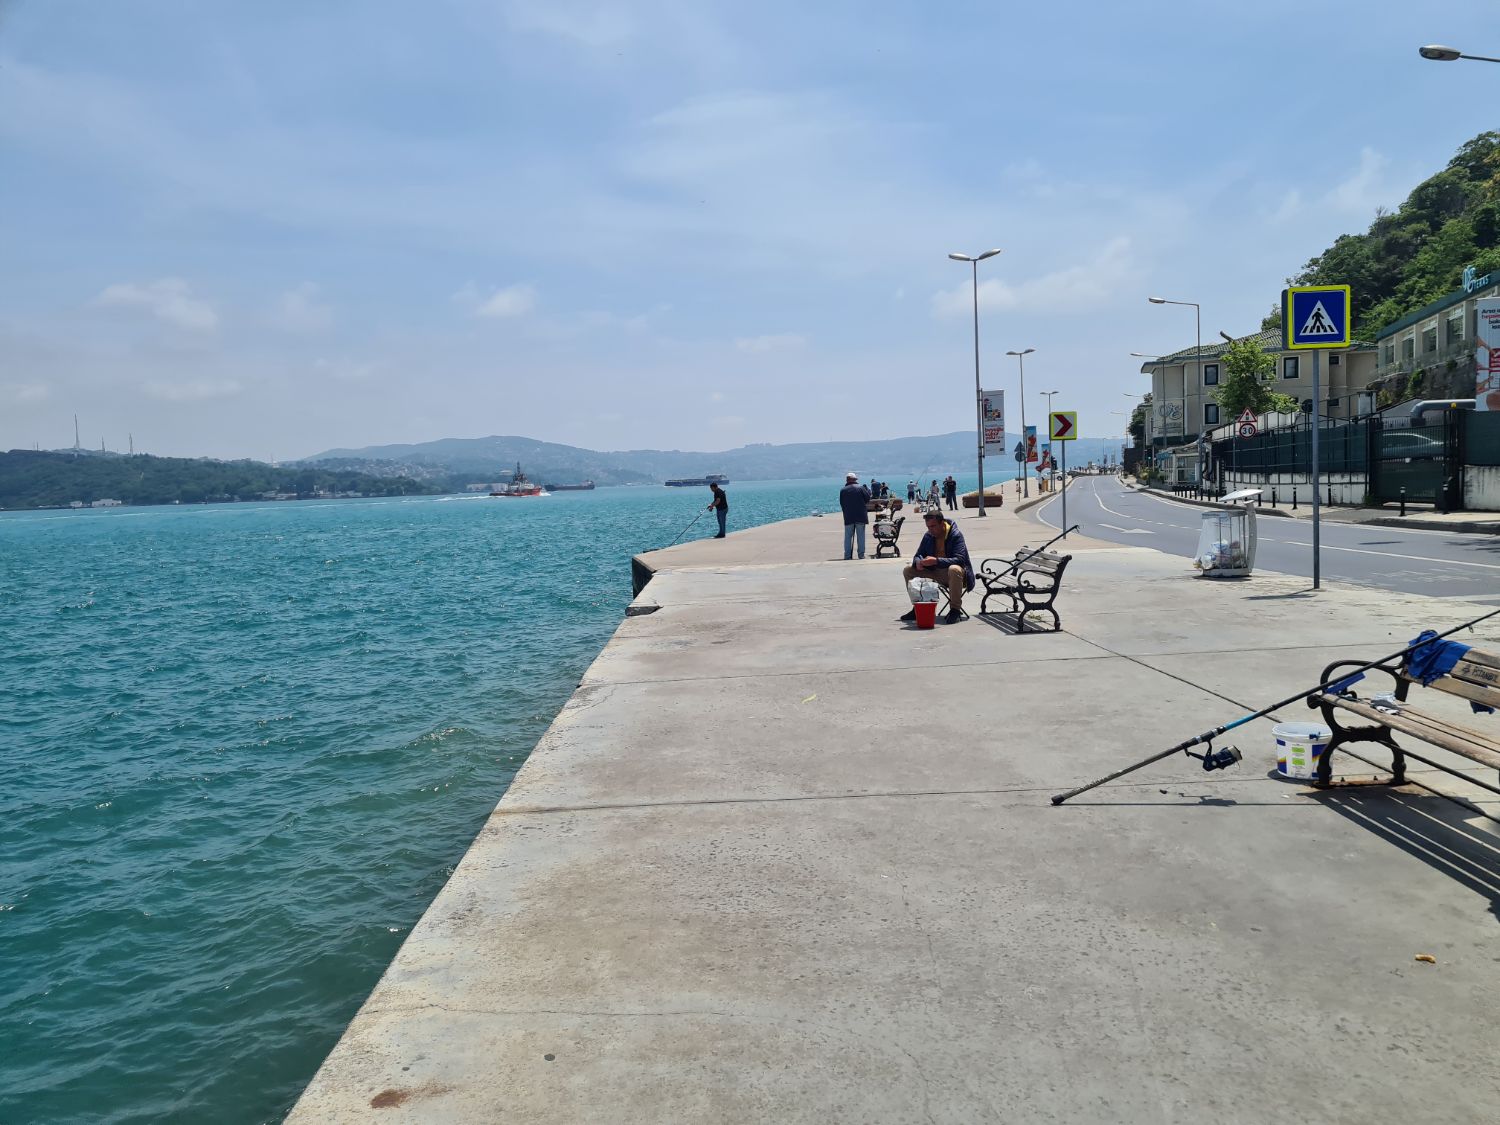 Spacious sidewalk next to the Bosporus